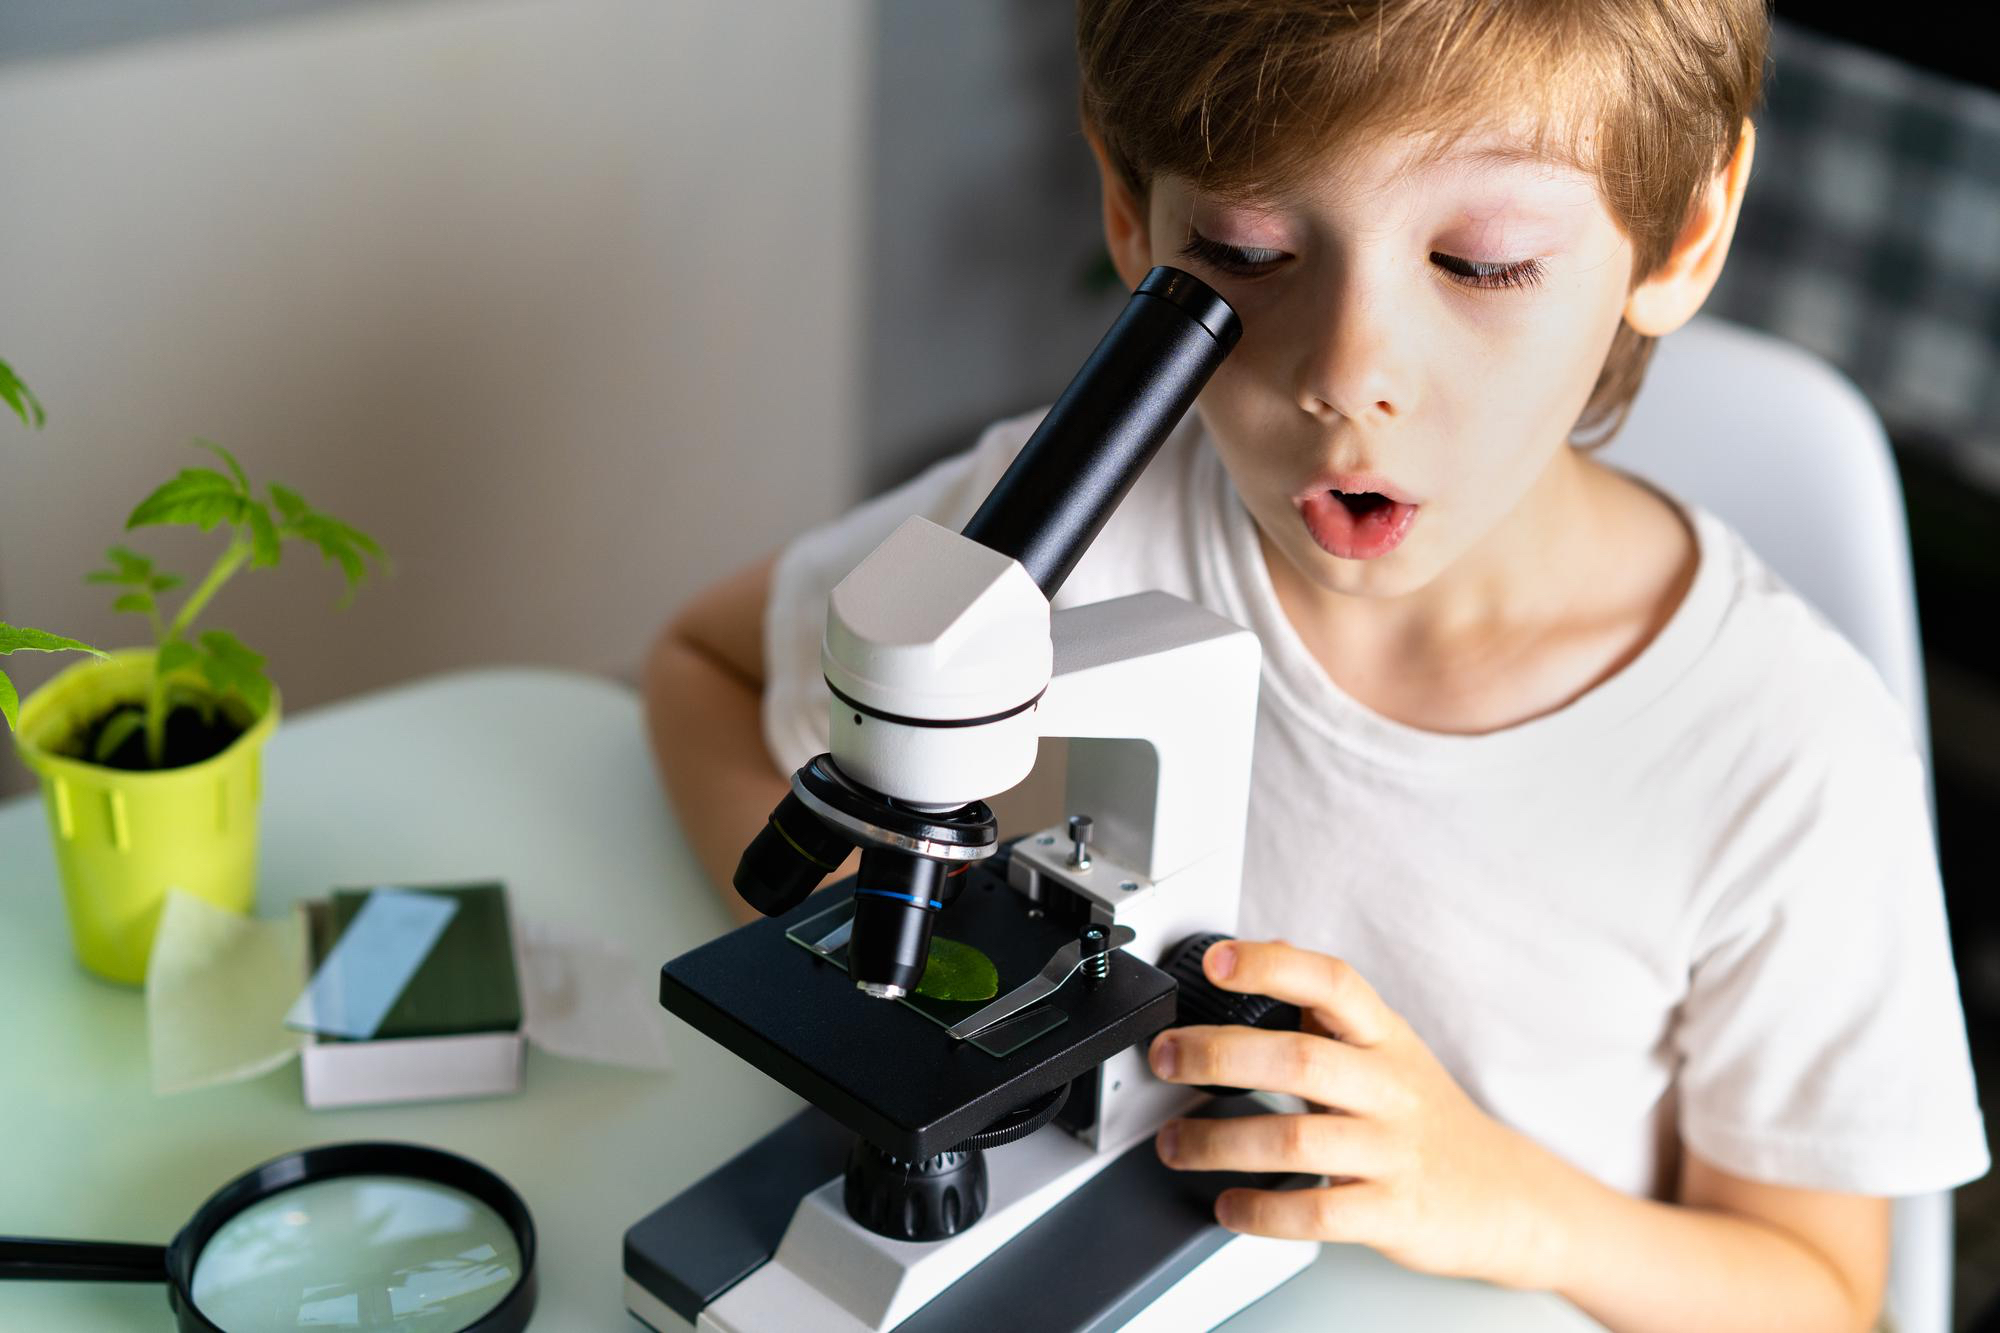 Mikroskop amatorski – dlaczego to idealny pomysł na prezent dla dziecka? Poznaj jego możliwości!